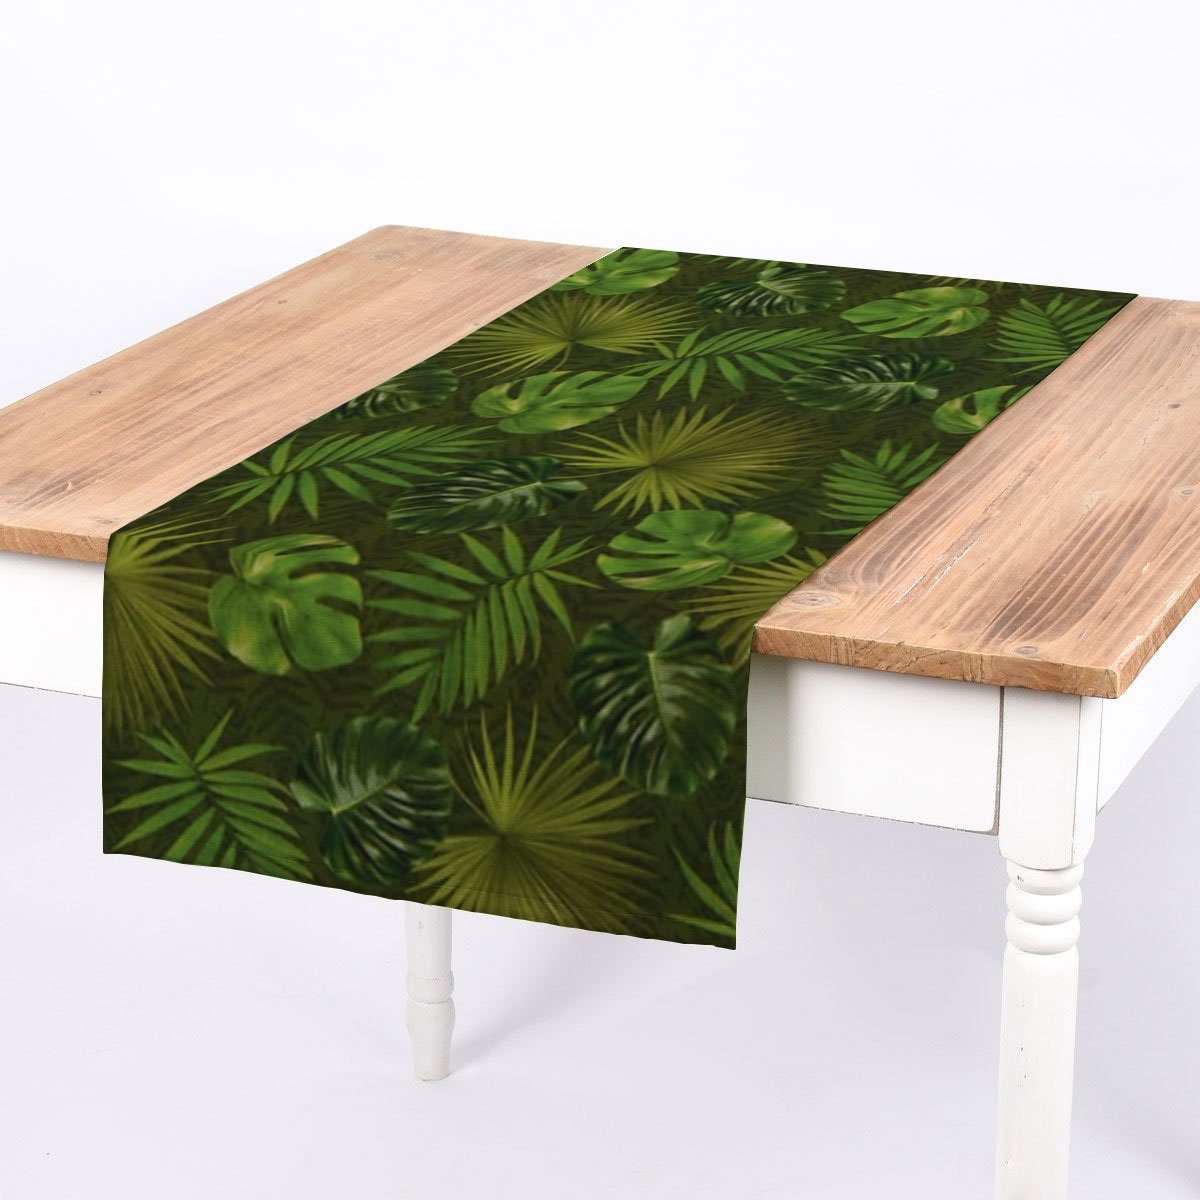 SCHÖNER 40x160cm, LEBEN. handmade SCHÖNER Tischläufer Outdoor Tischläufer LEBEN. Palmen Blätter grün